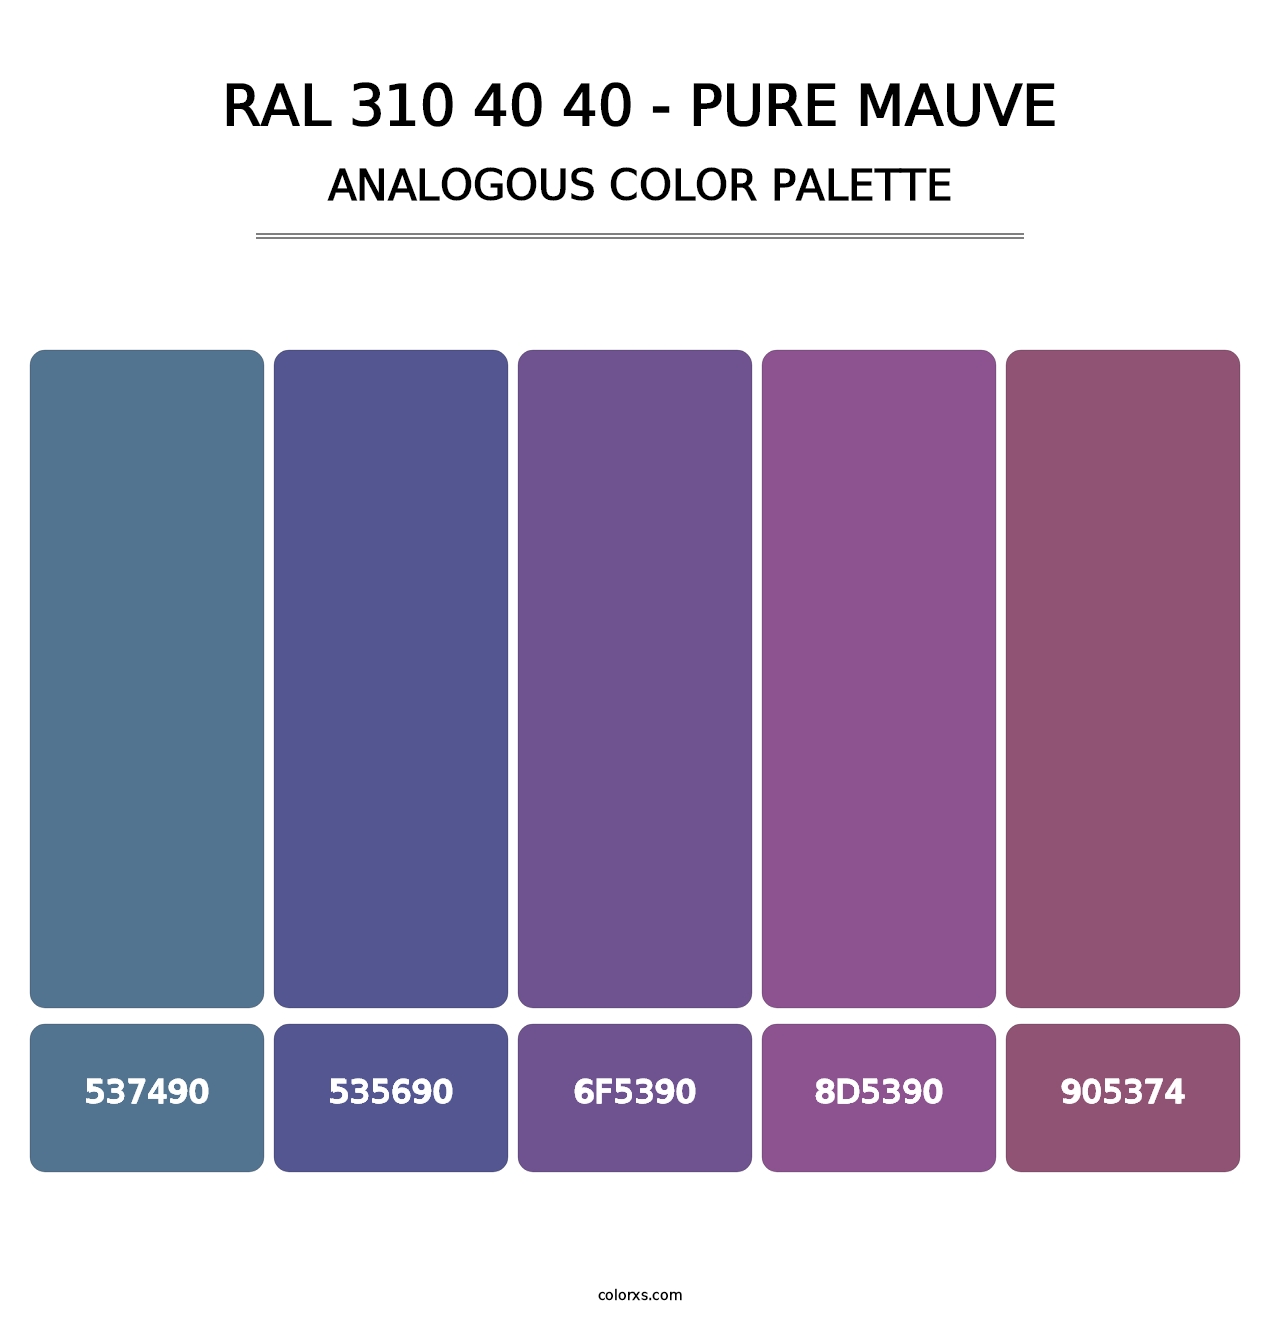 RAL 310 40 40 - Pure Mauve - Analogous Color Palette